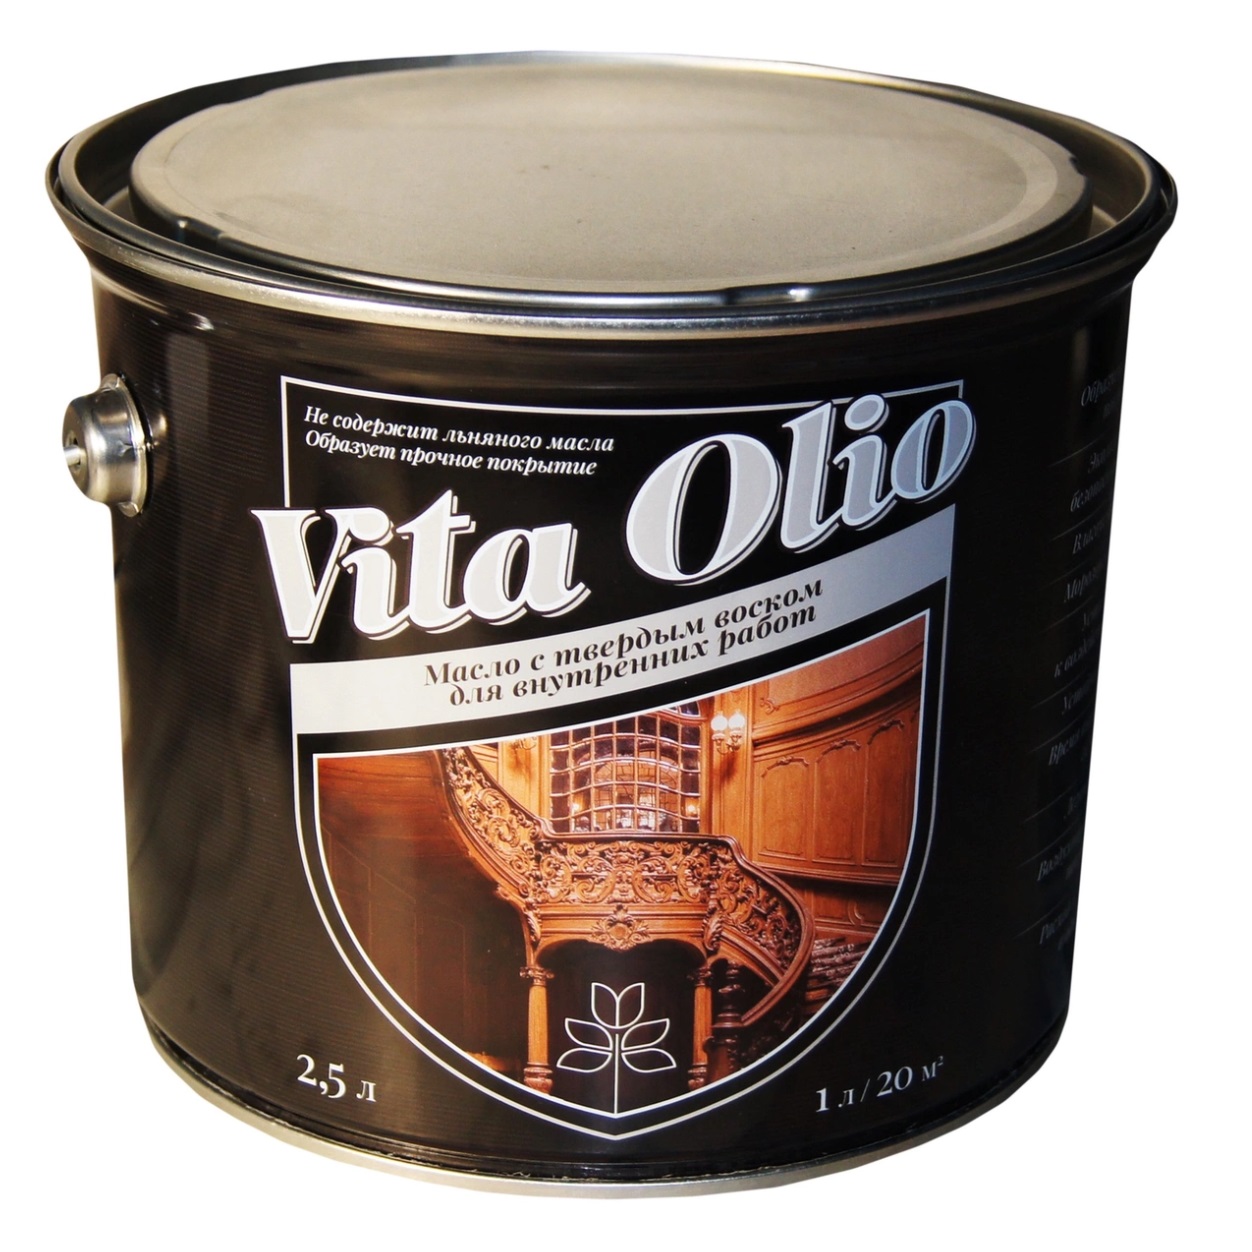 Масло VITA OLIO для внутренних работ с твердым воском шелковисто-матовое цвет серебристо-серый. 2,5 л.